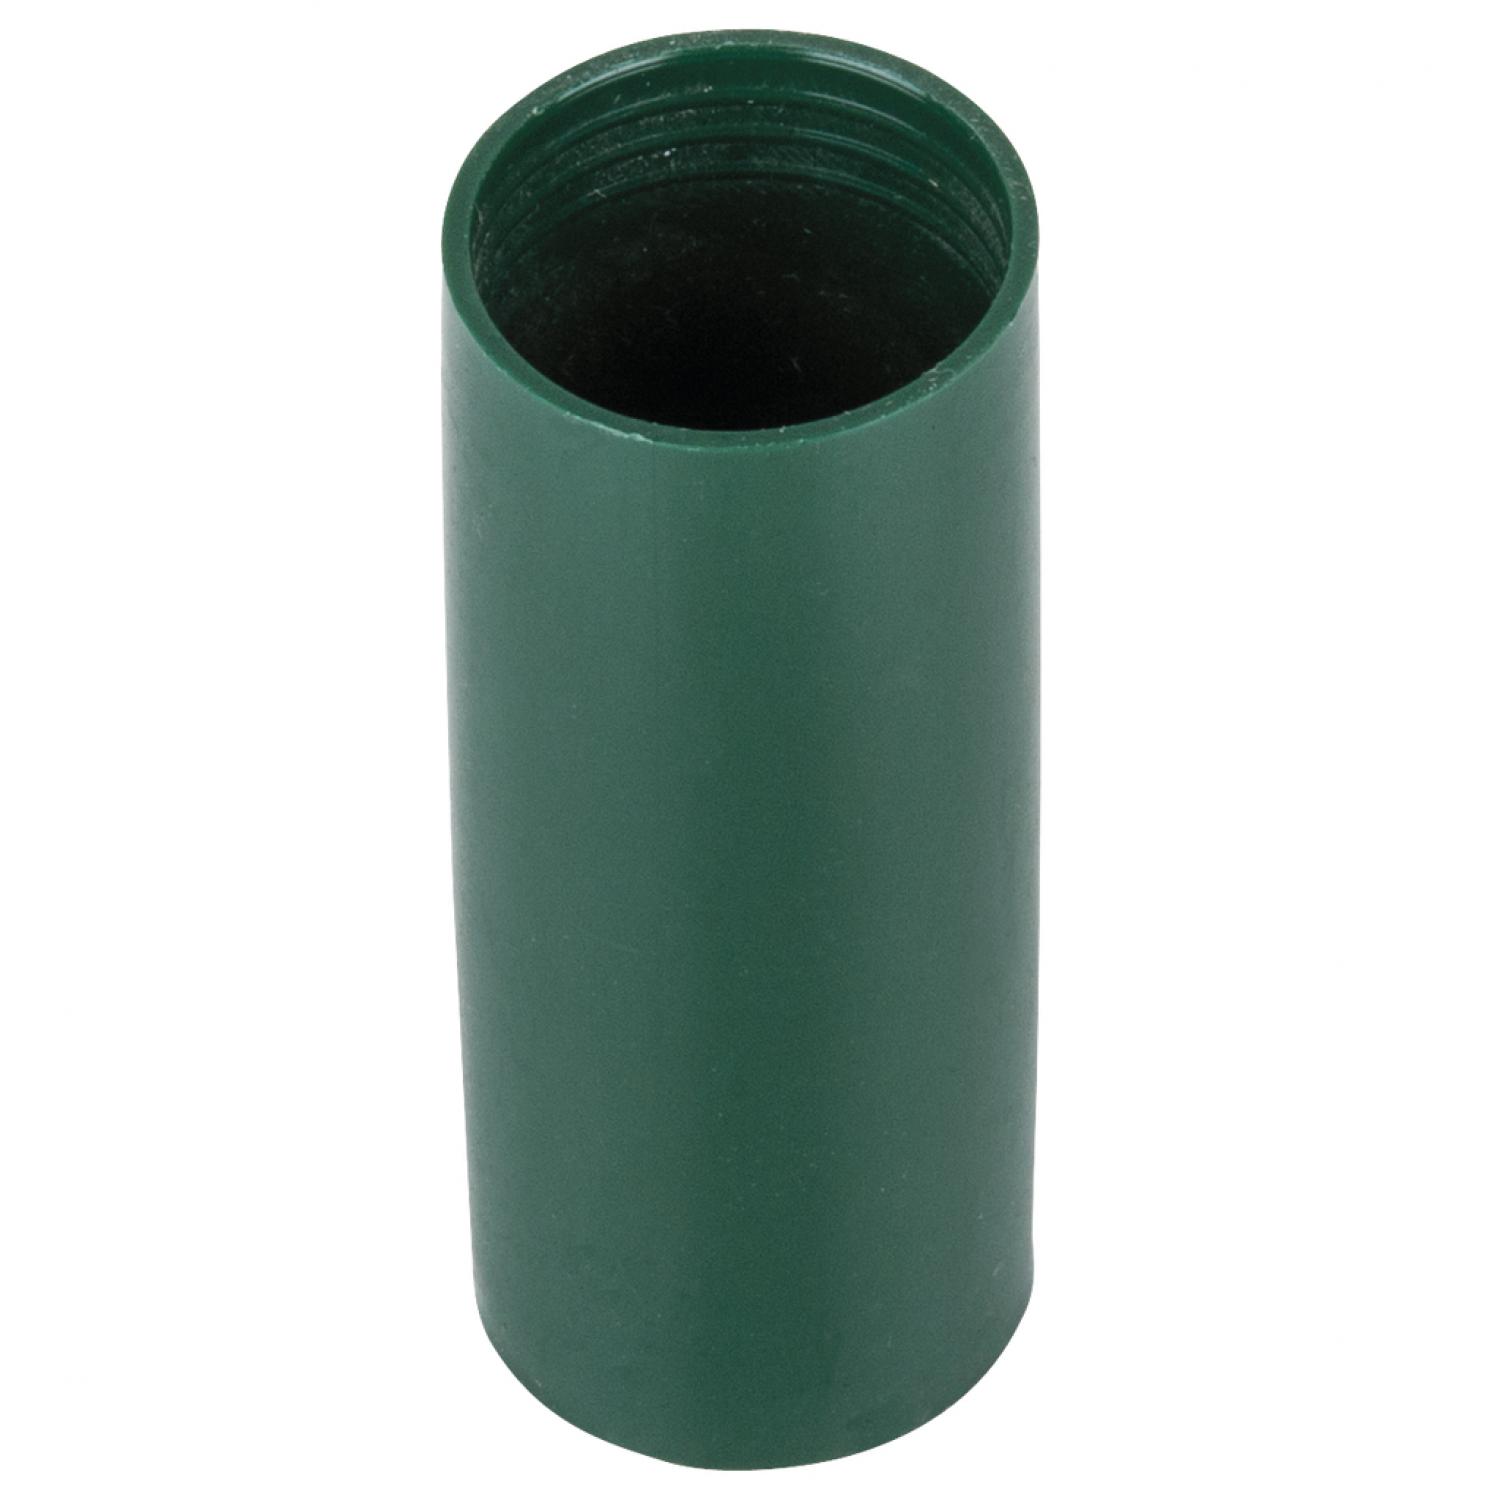 Запасная пластиковая втулка, темно-зеленая, для силовой головки, 15 мм